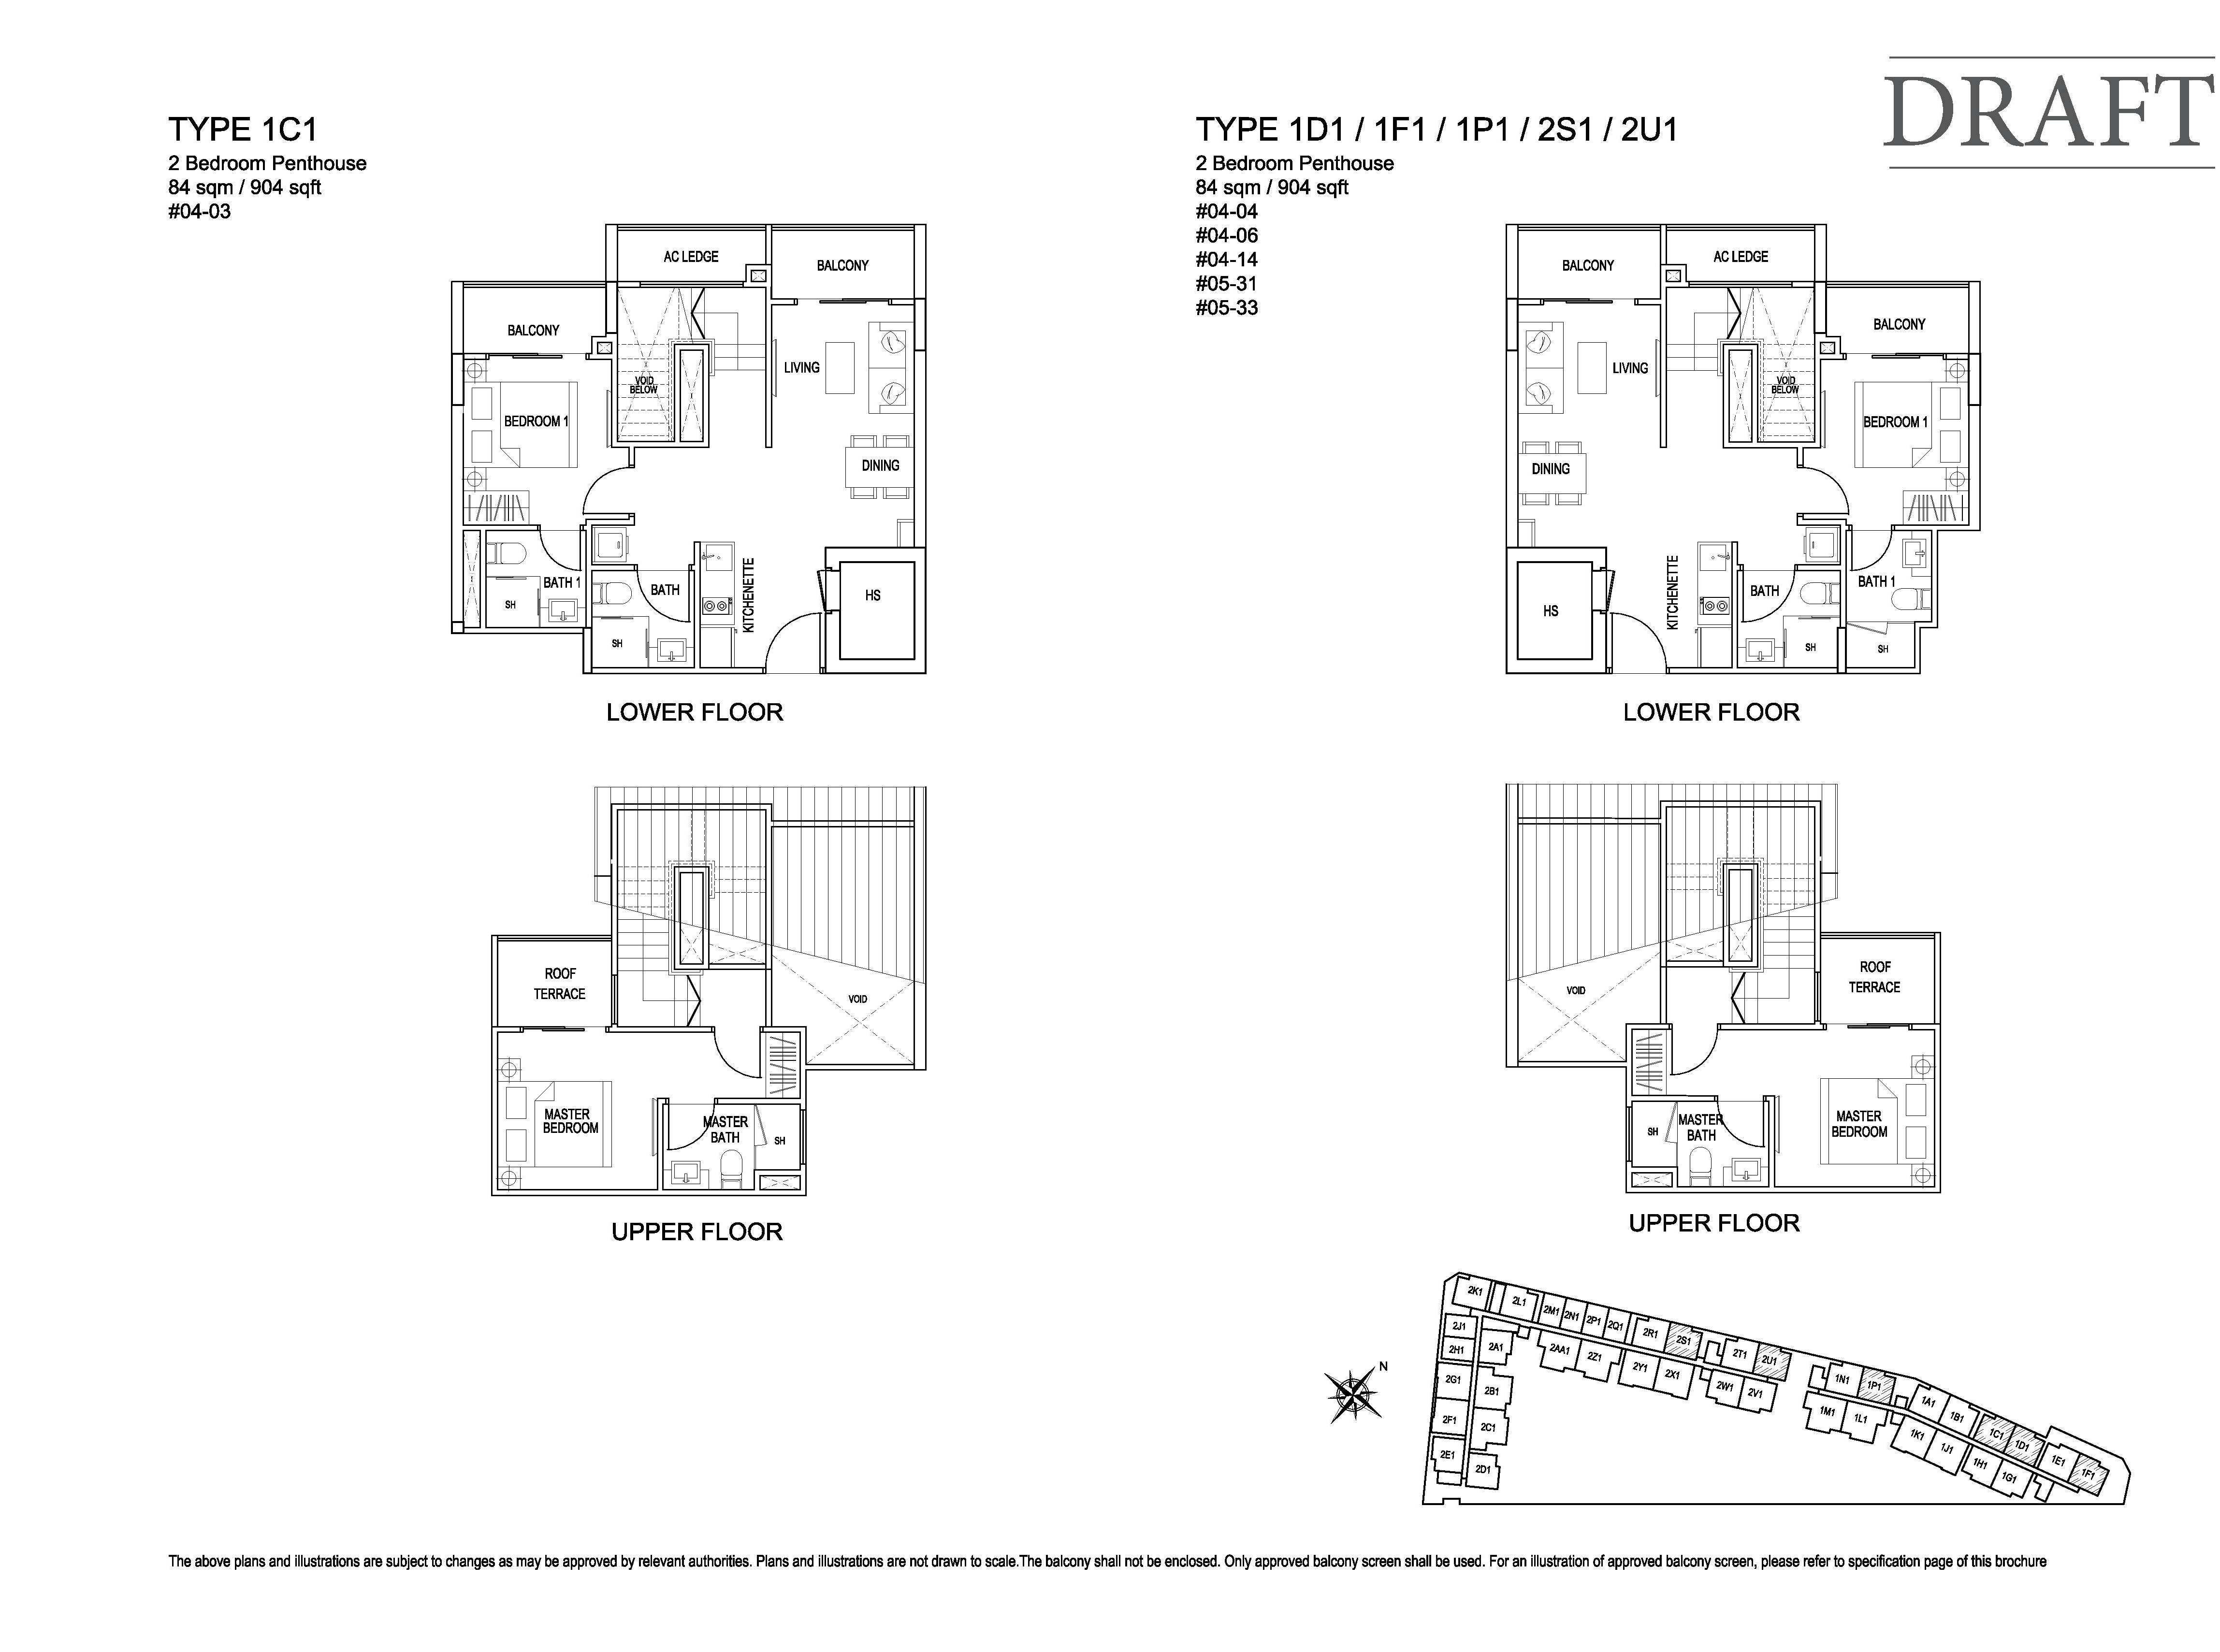 Kensington Square 2 Bedroom Penthouse Floor Plans Type 1C1, 1D1, 1F1, 1P1, 2S1, 2U1